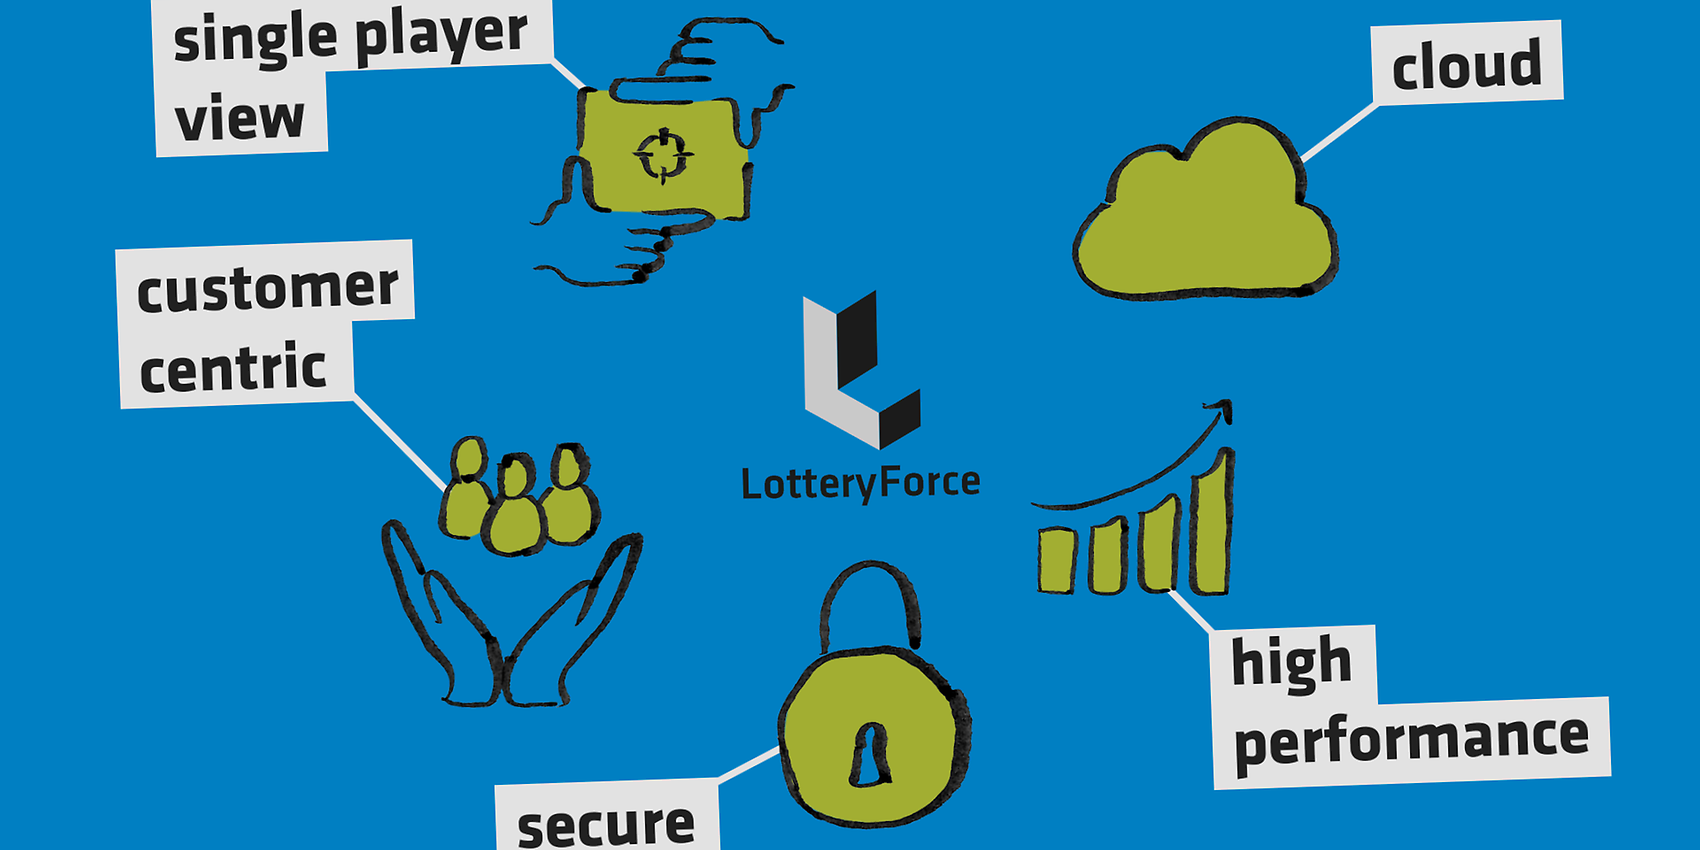   Die Cloud-fertige iGaming-Plattform LotteryForce stellt Kunden in den Mittelpunkt und überzeugt mit hoher Leistungsfähigkeit und ausgeprägten Sicherheitsfunktionen. (Quelle: adesso)